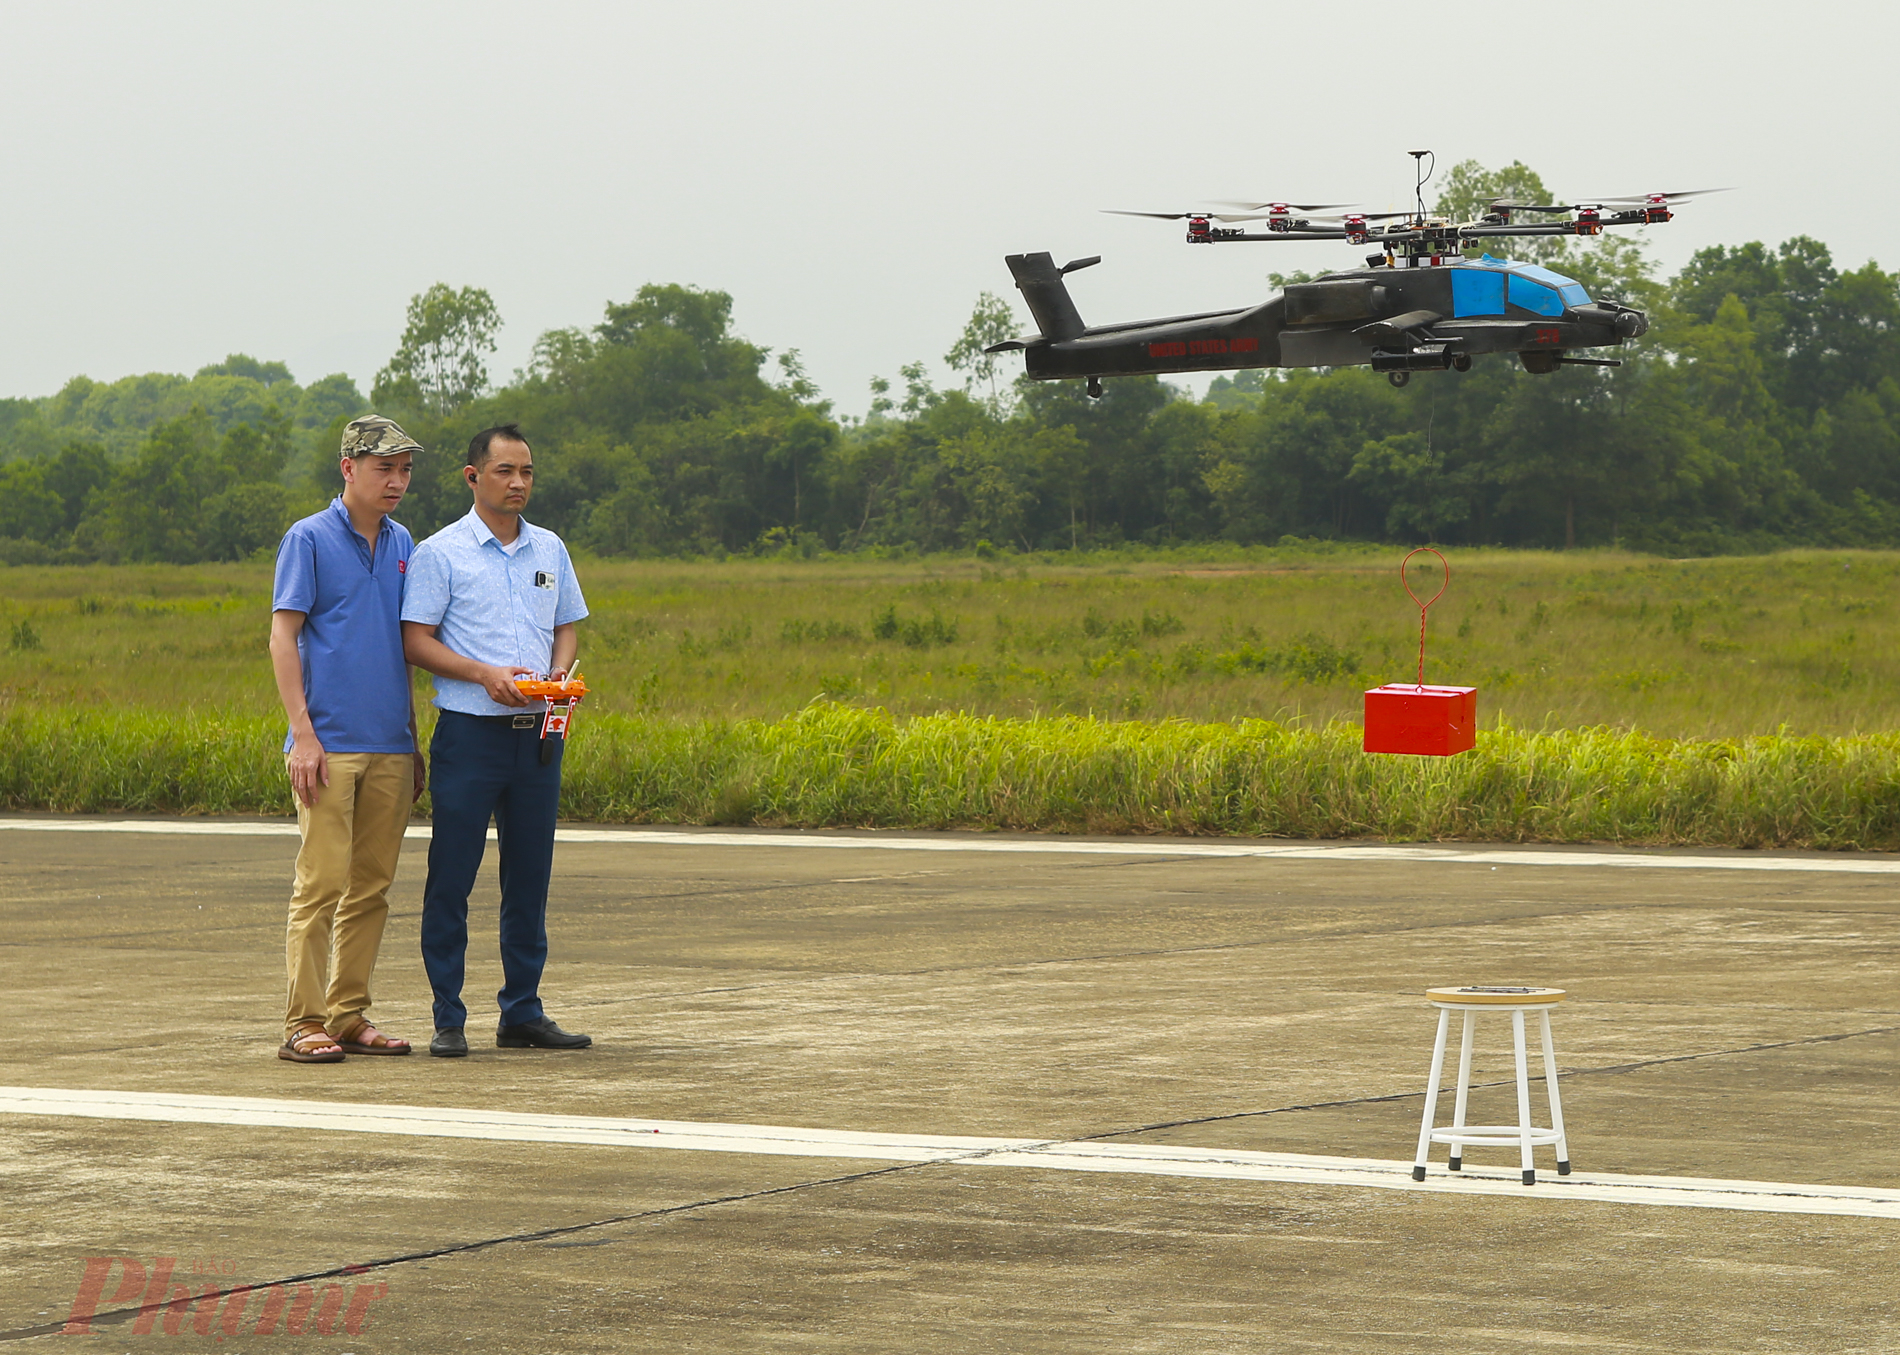 Bài thi kéo thả đồ vật bằng máy bay trực thăng được đánh giá là khó nhất tại cuộc thi.